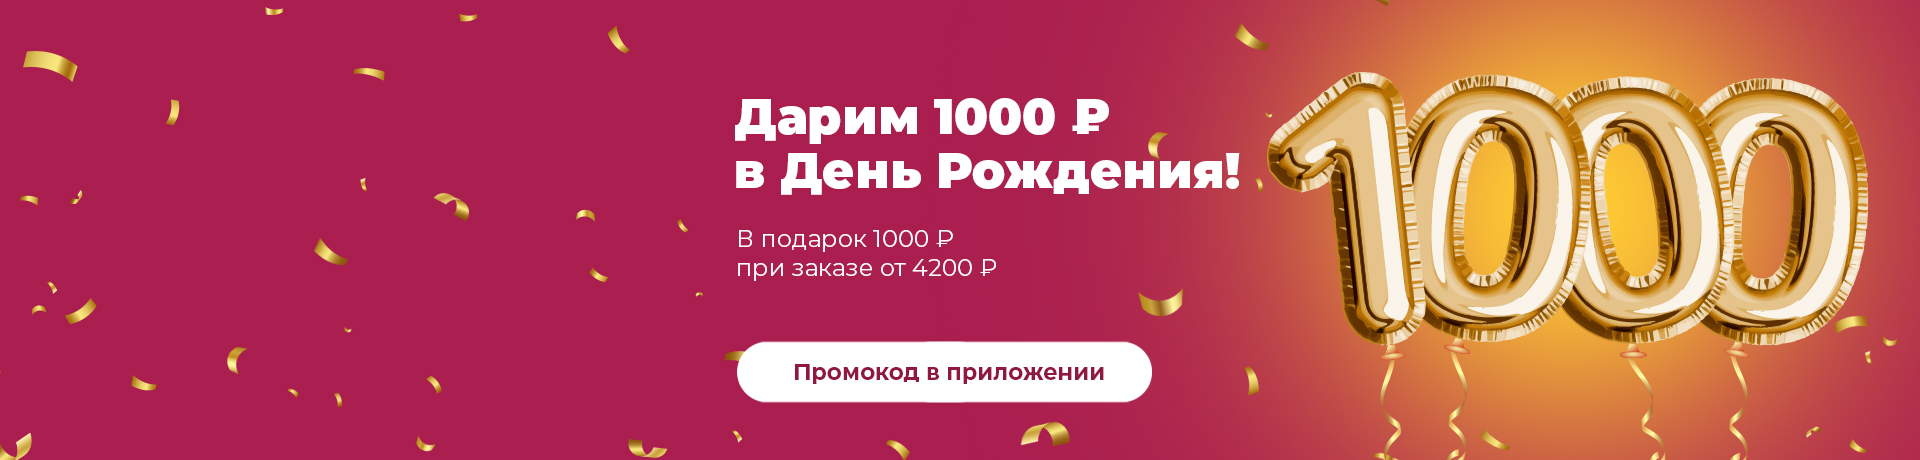 Дарим 1000 рублей на День Рождения